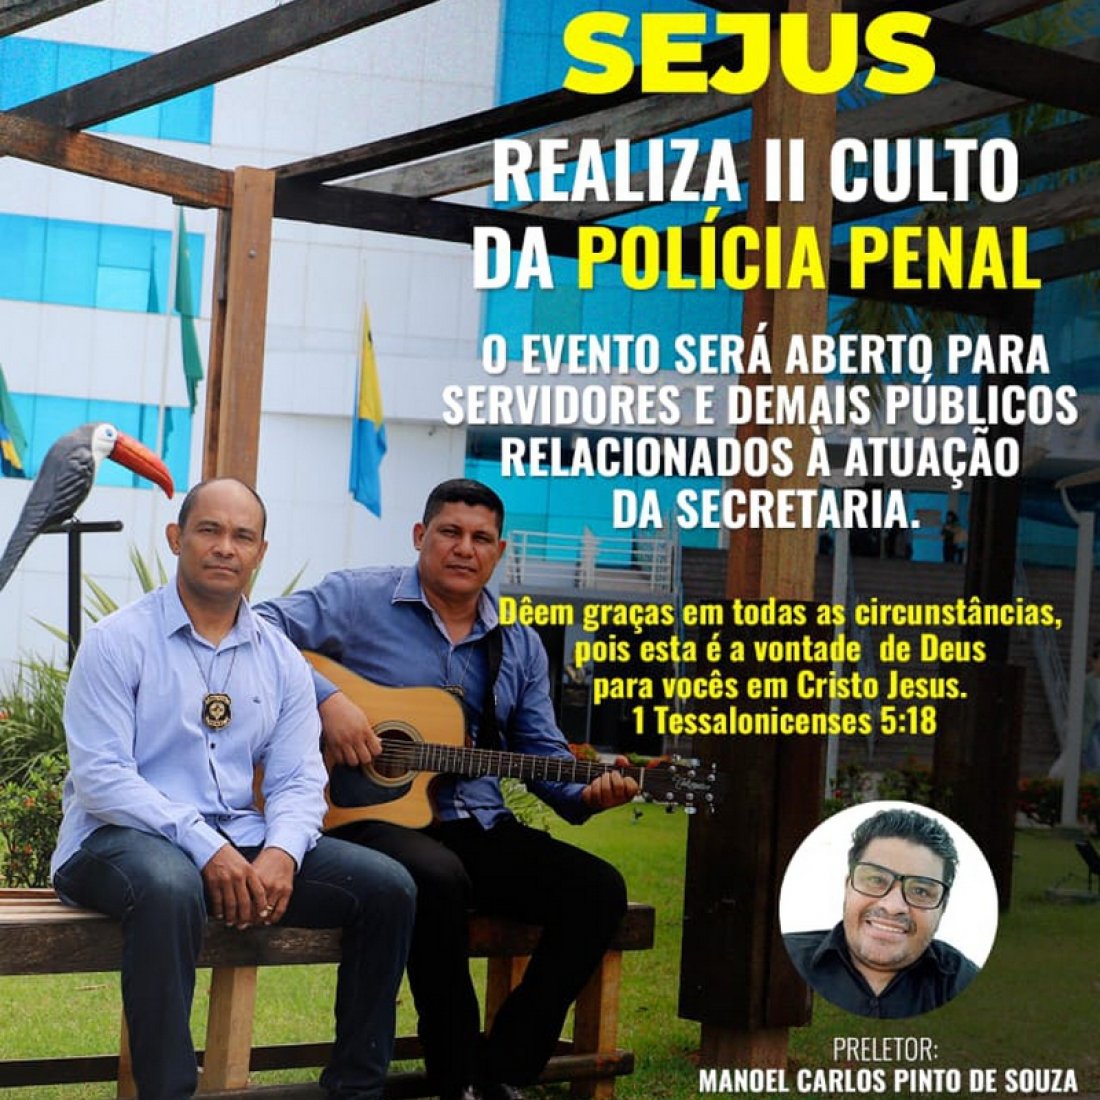 II Culto de Adoração e Louvor da Polícia Penal será no dia 15 de dezembro